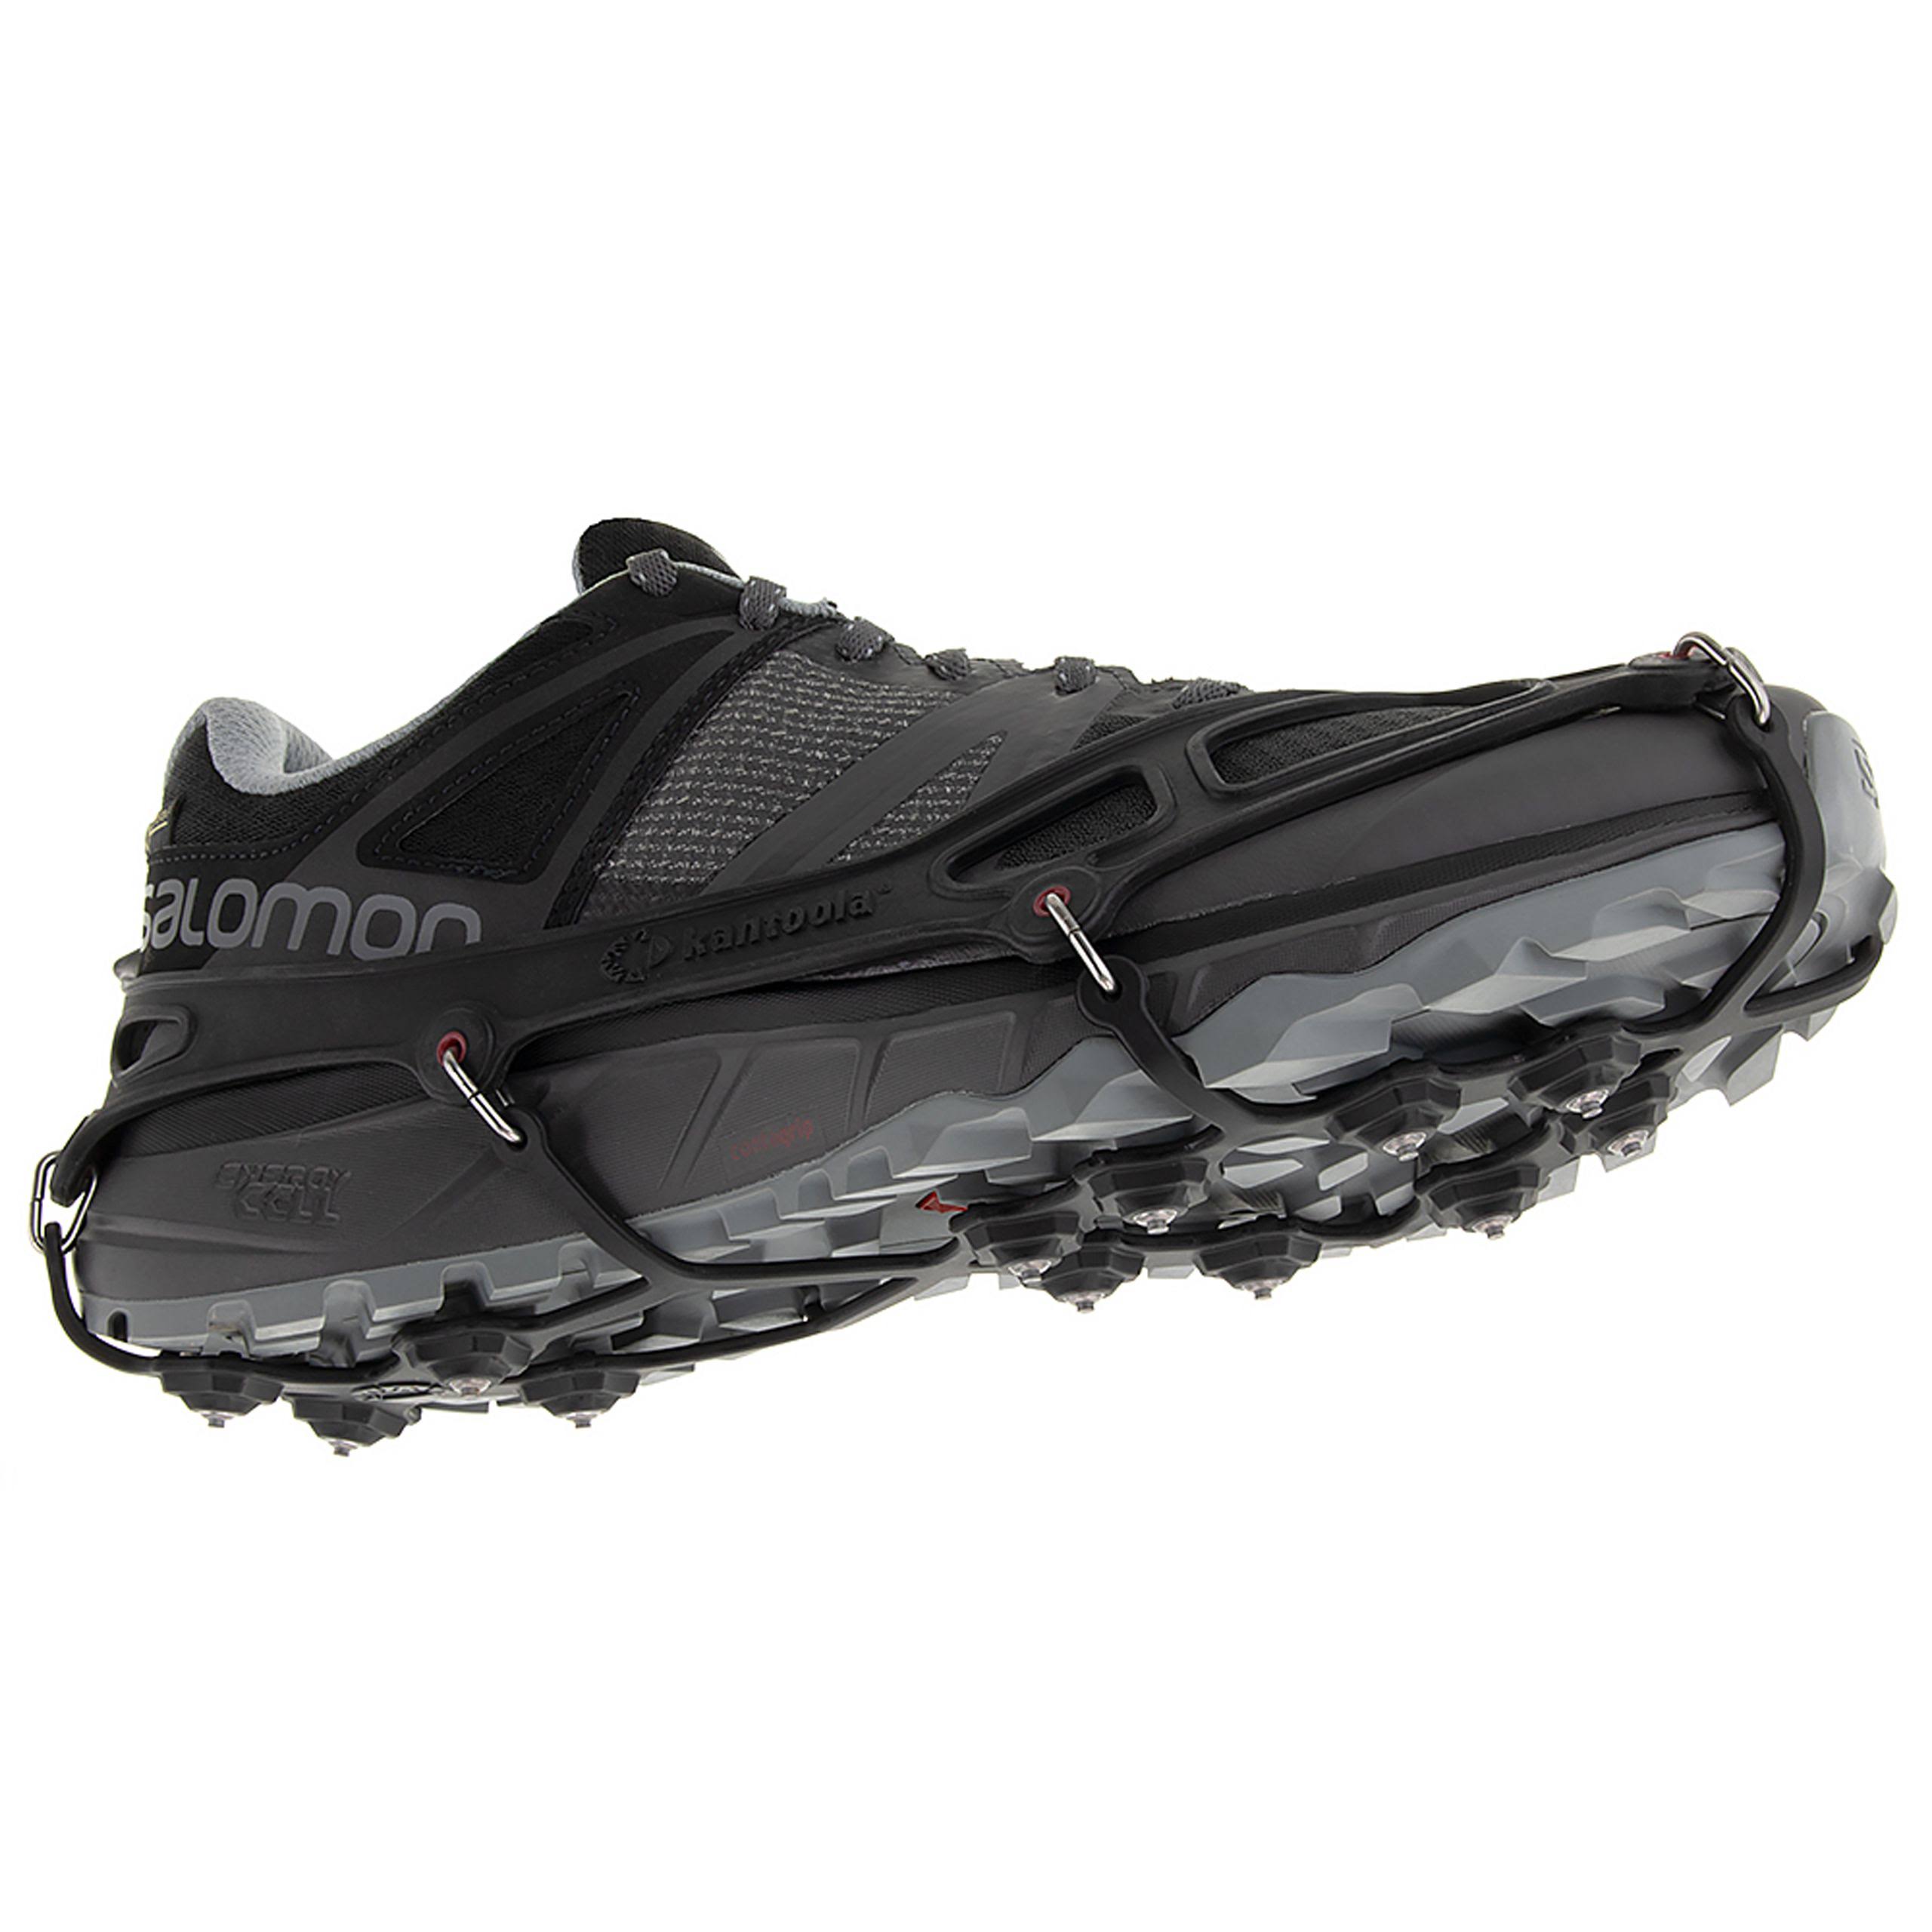 Kahtoola EXOspikes Footwear Traction - Black - Medium